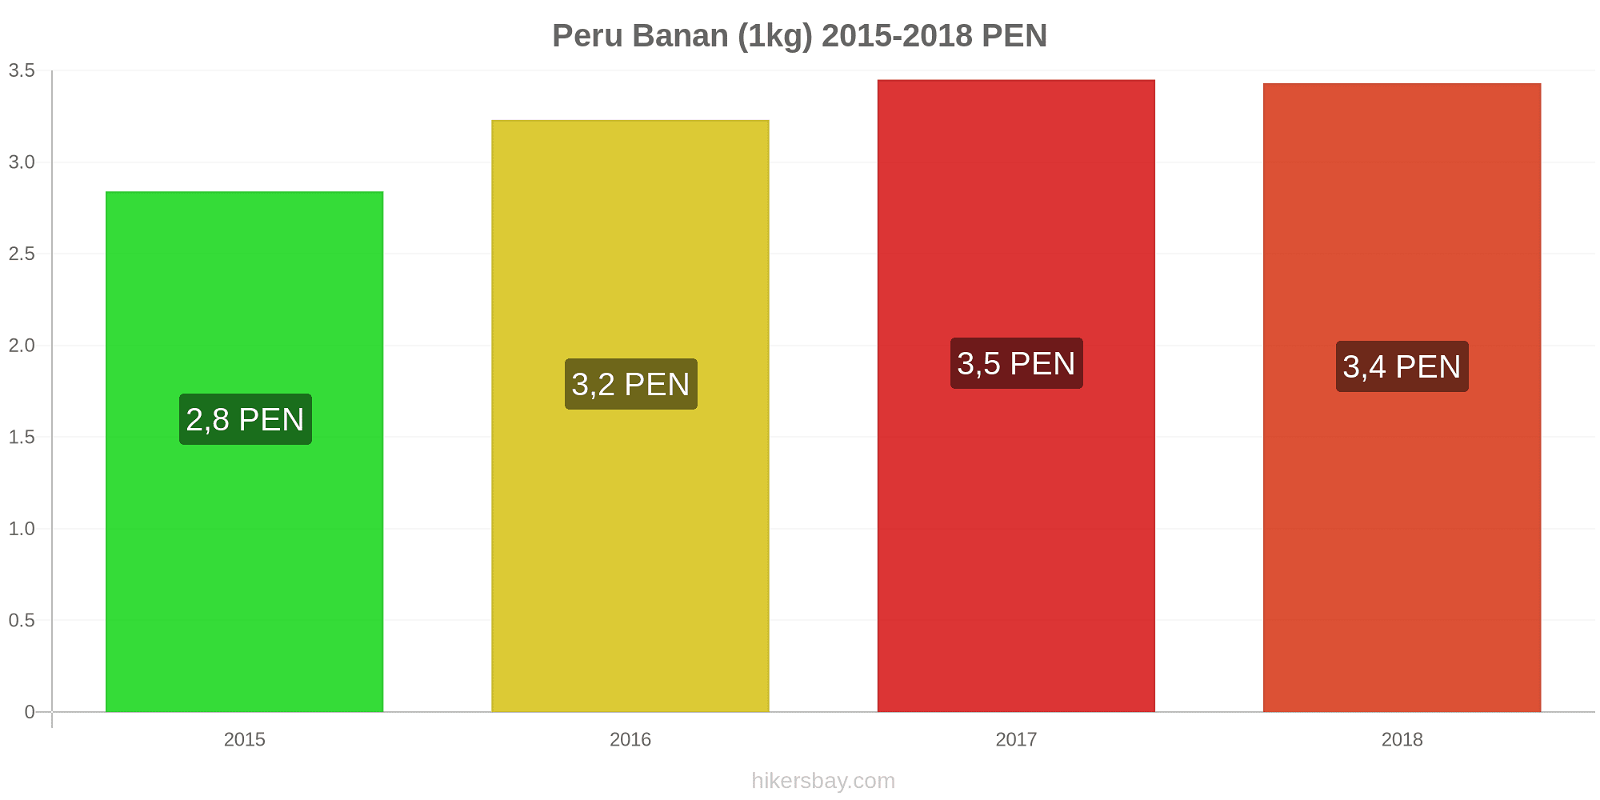 Peru prisändringar Bananer (1kg) hikersbay.com